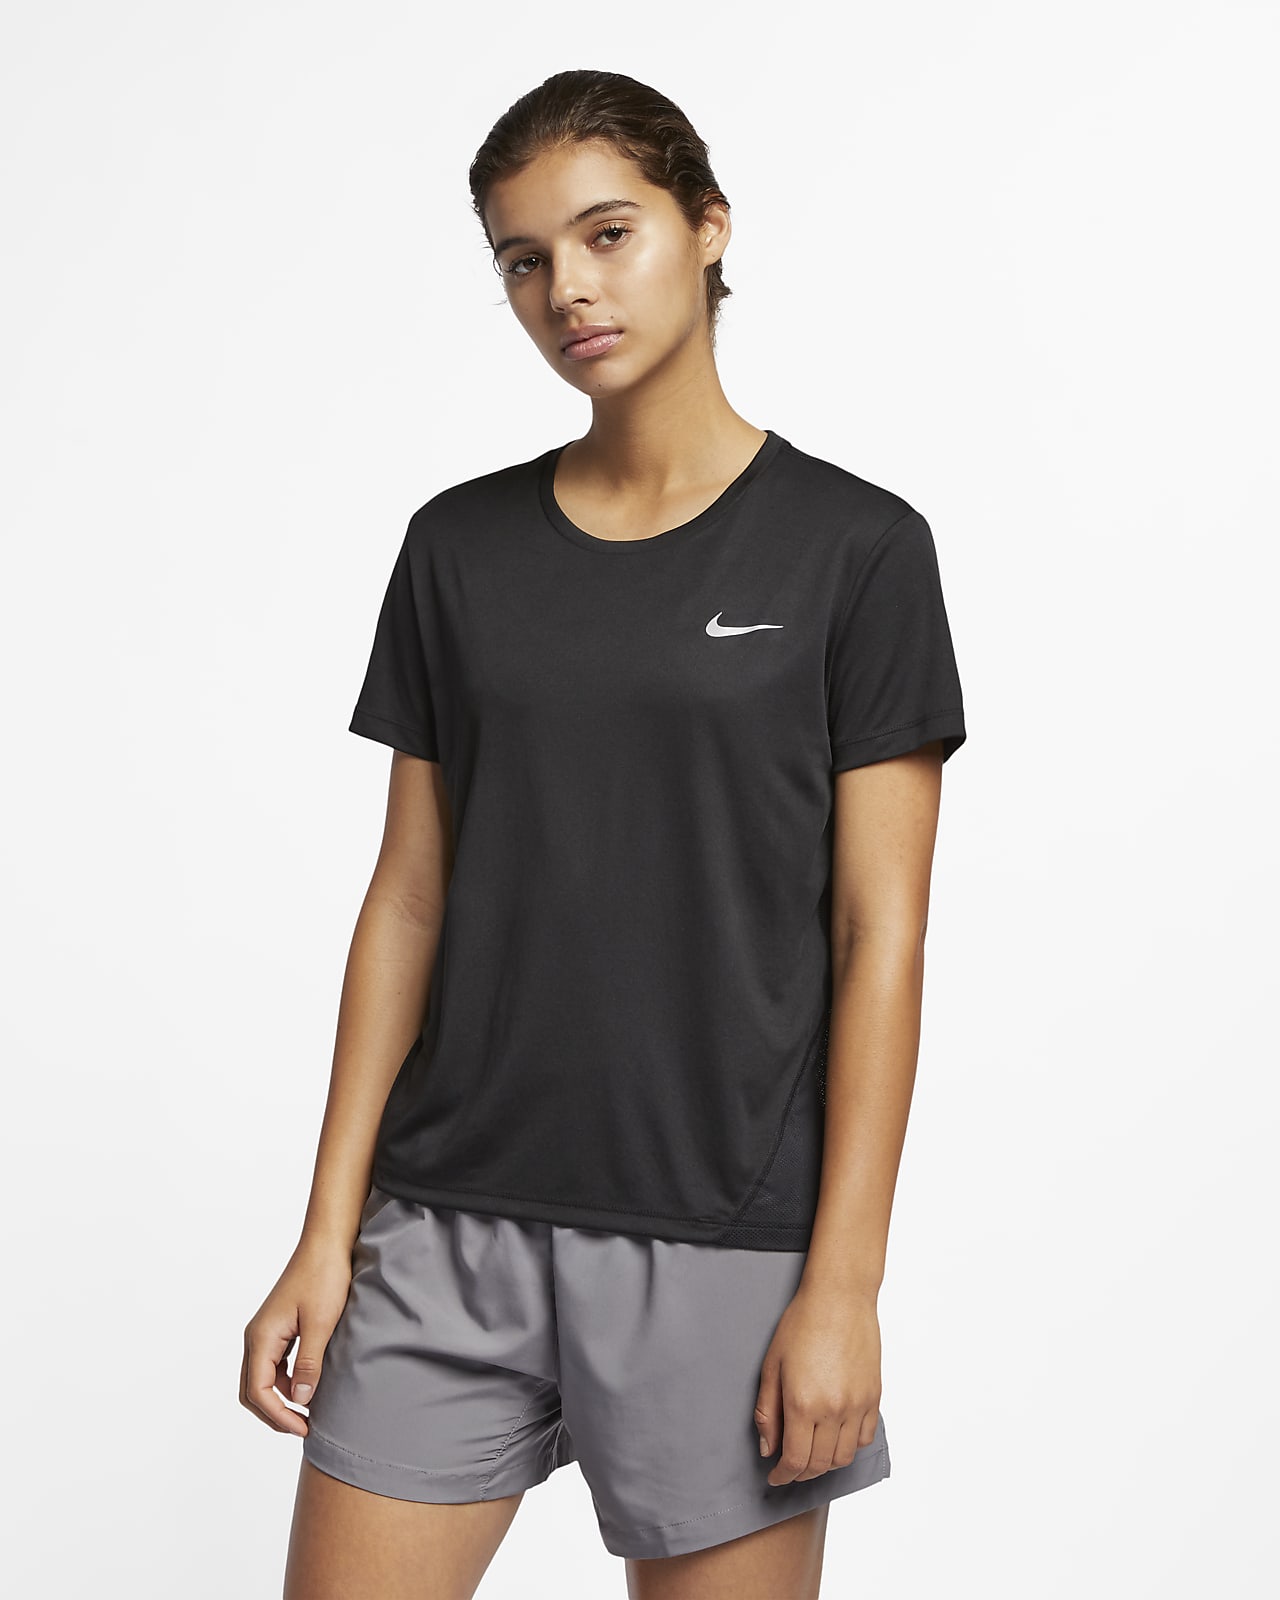 Nike til kvinder. DK